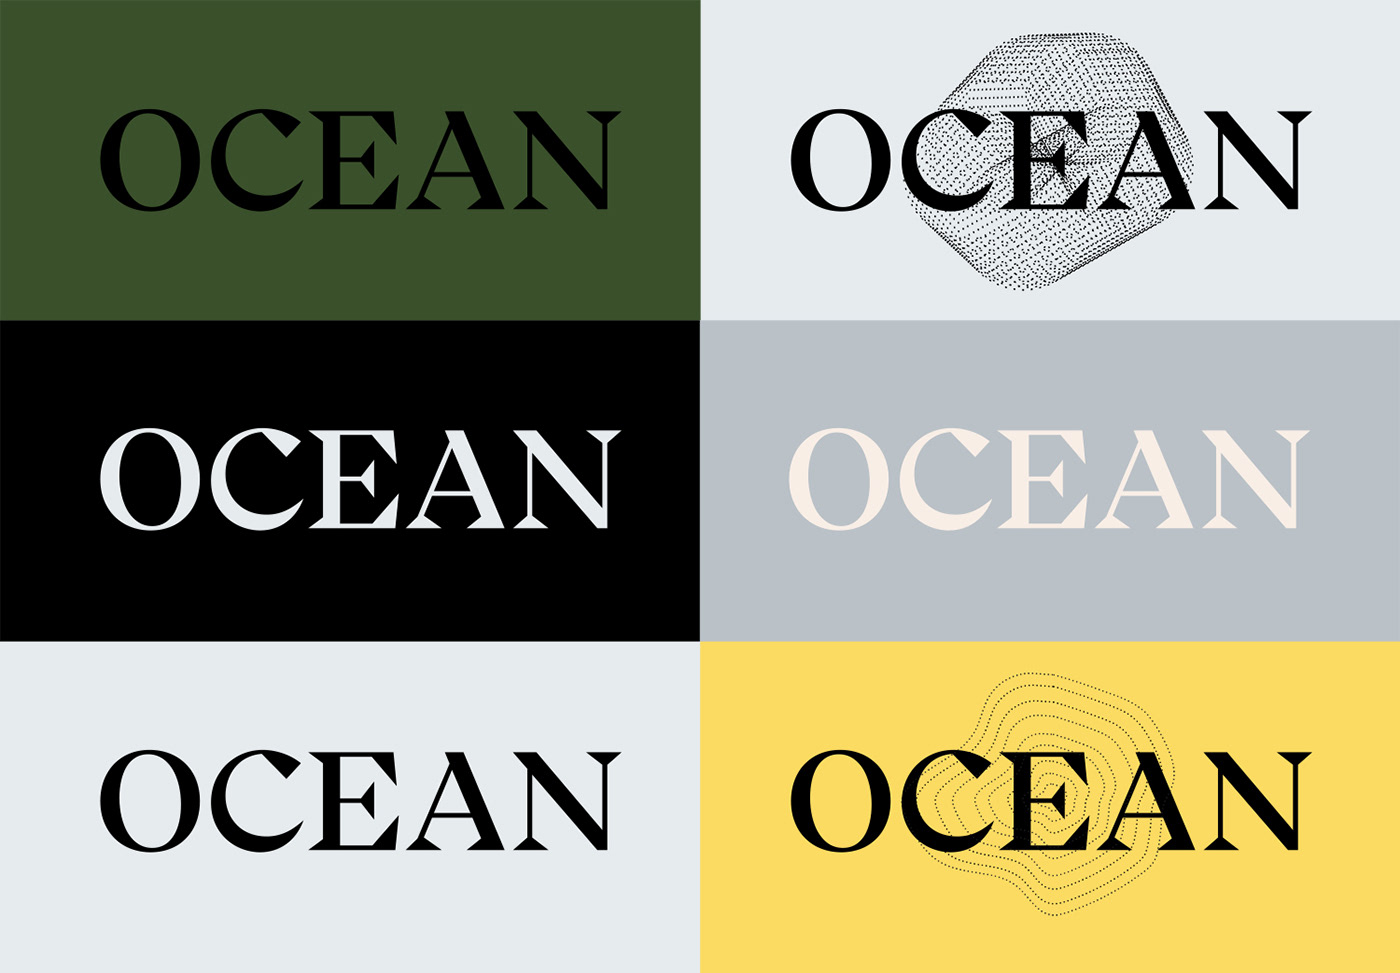 Business card design idea #423: Ocean